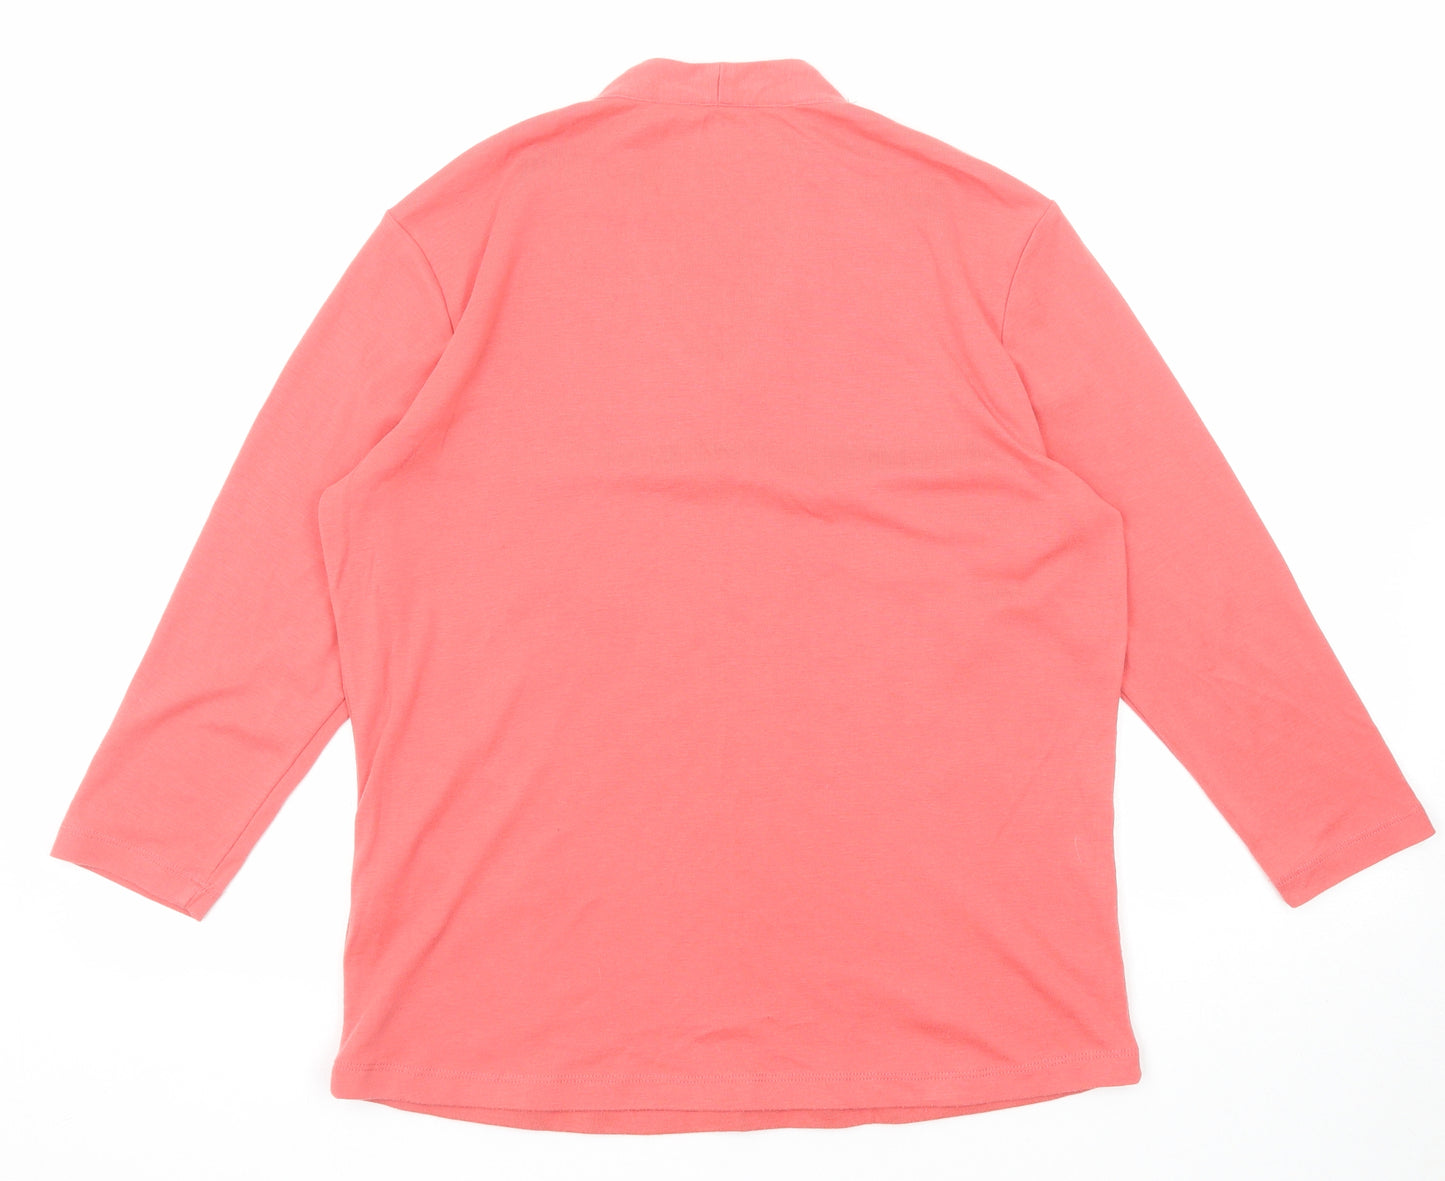 Viz a Viz Womens Pink Polyester Basic Blouse Size 16 V-Neck